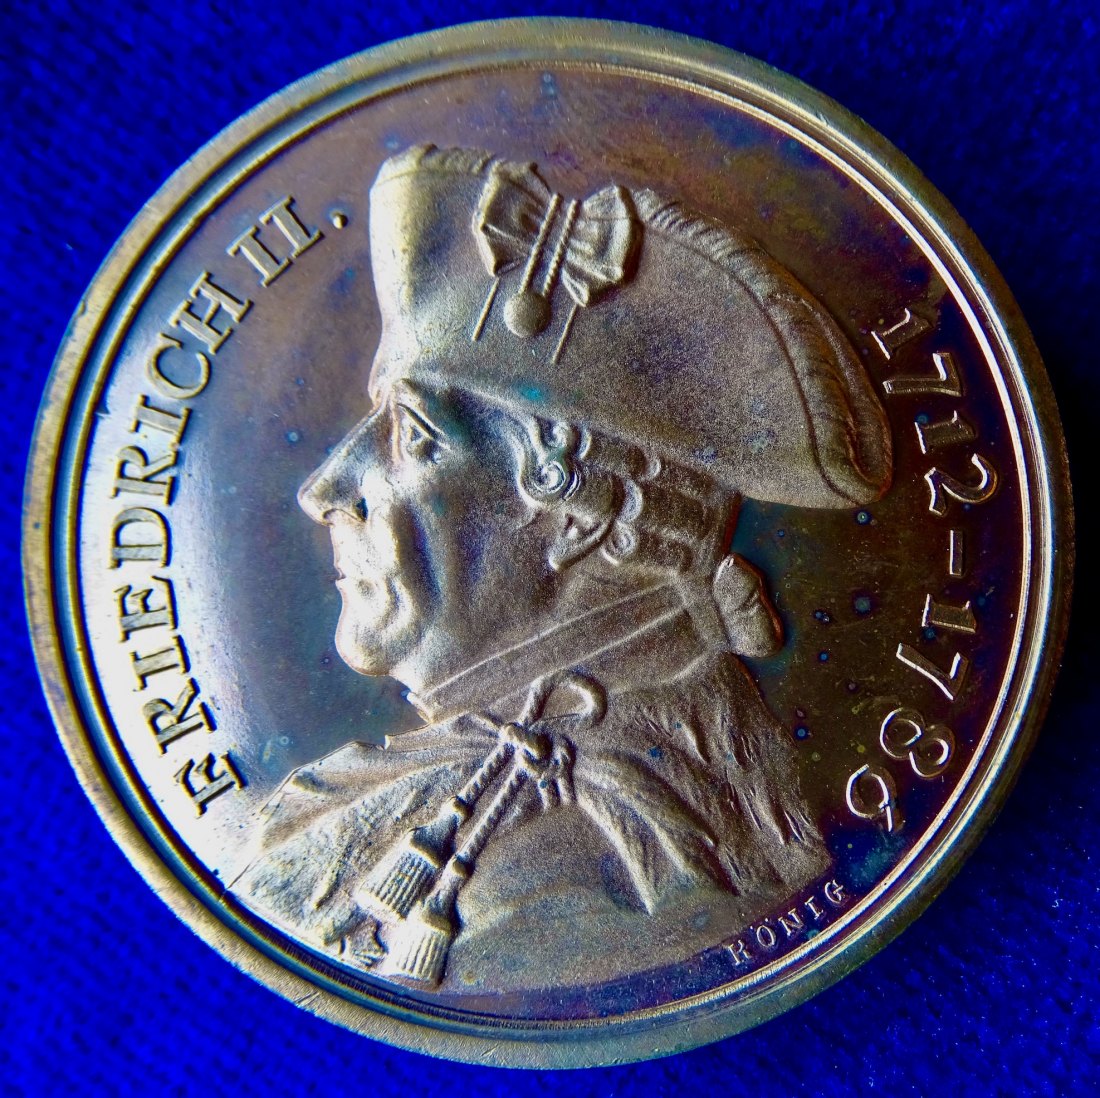  Friedrich der Große Medaille von König 1990 o.J. auf die Überführung seiner Gebeine nach Potsdam   